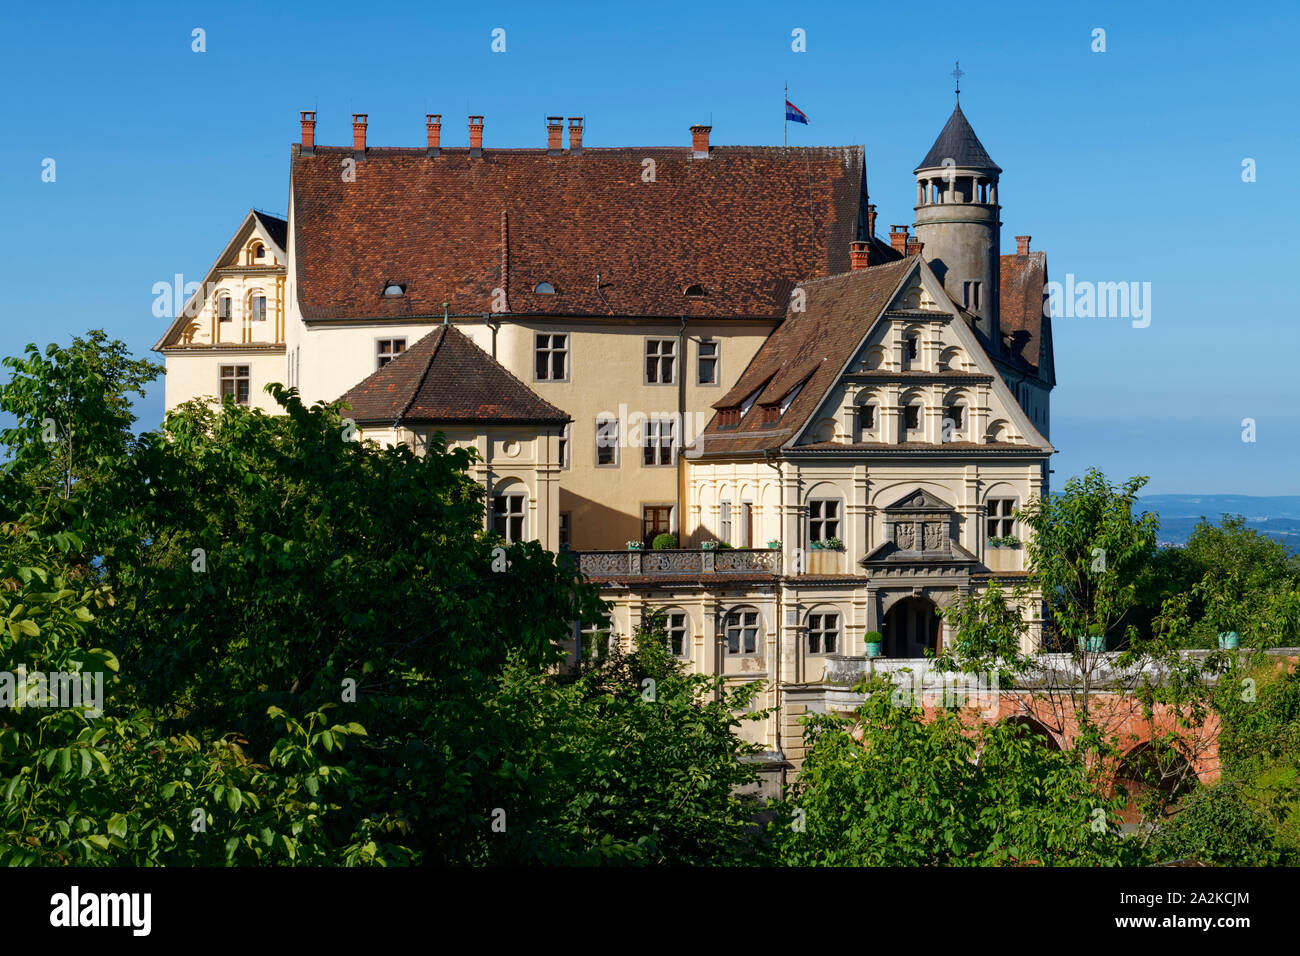 Château de Heiligenberg dans la région de Linzgau, près du lac de Constance, du quartier de Bodensee, du Bade-Wurtemberg, en Allemagne Banque D'Images